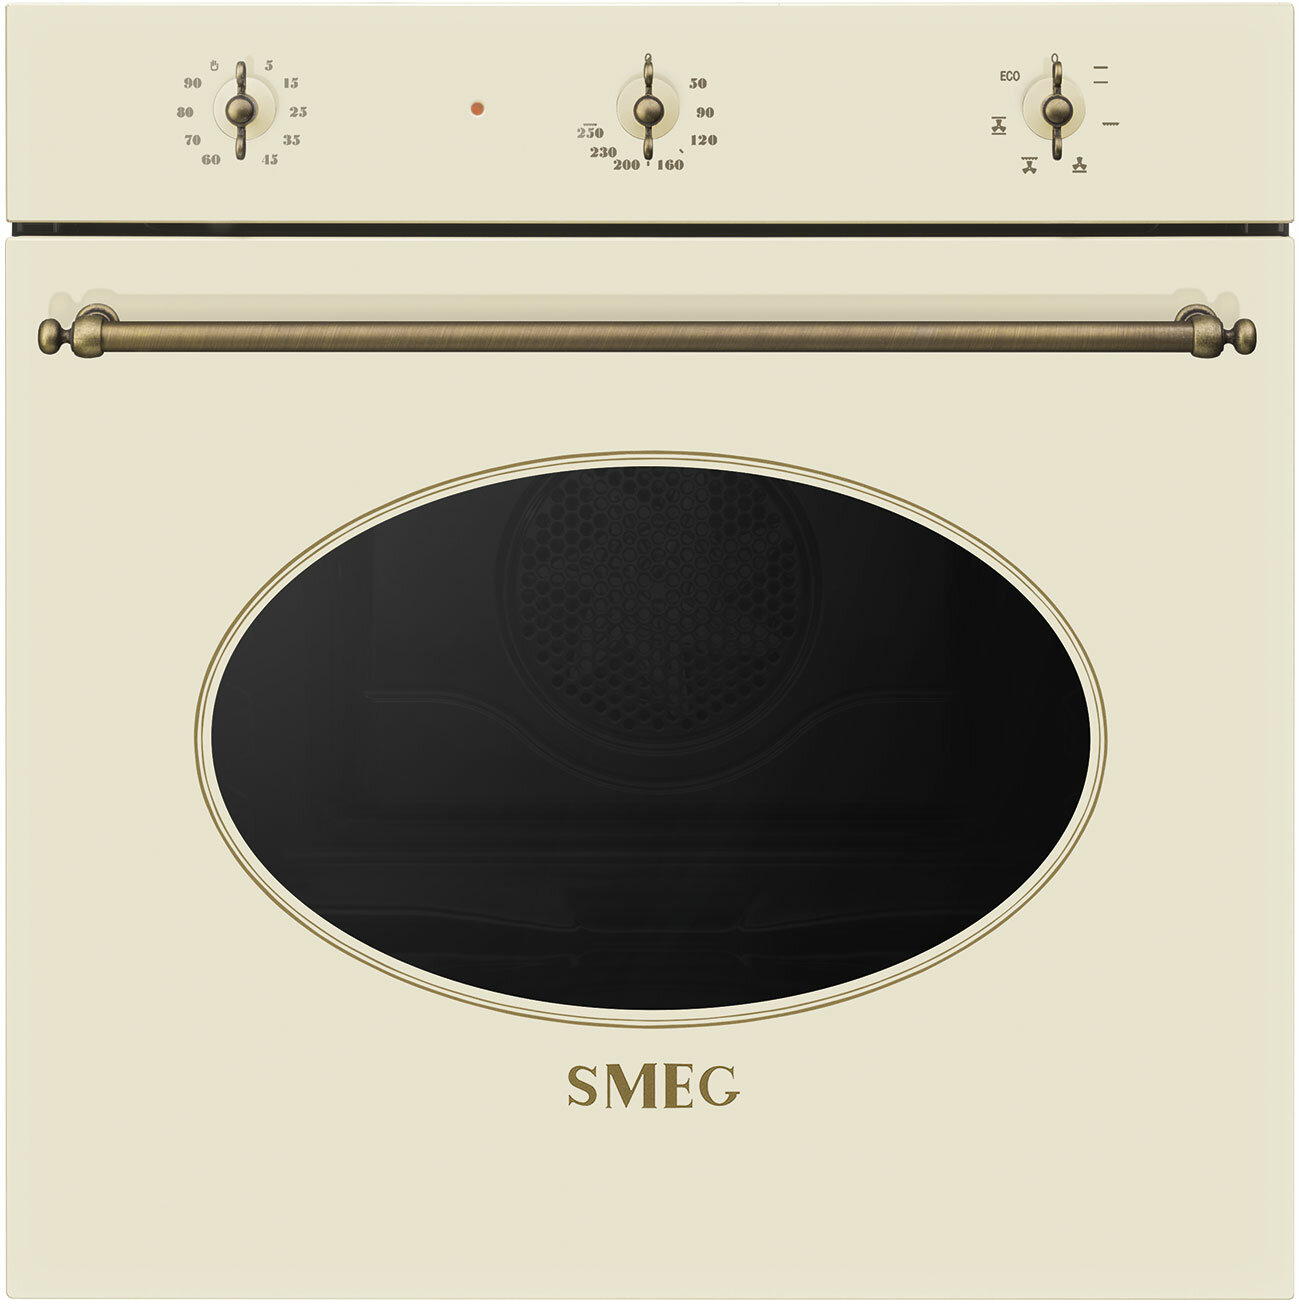 Smeg Встраиваемая электрическая духовка SMEG/ Coloniale, Многофункциональный духовой шкаф, 60 см, 6 функций, кремовый , фурнитура латунная